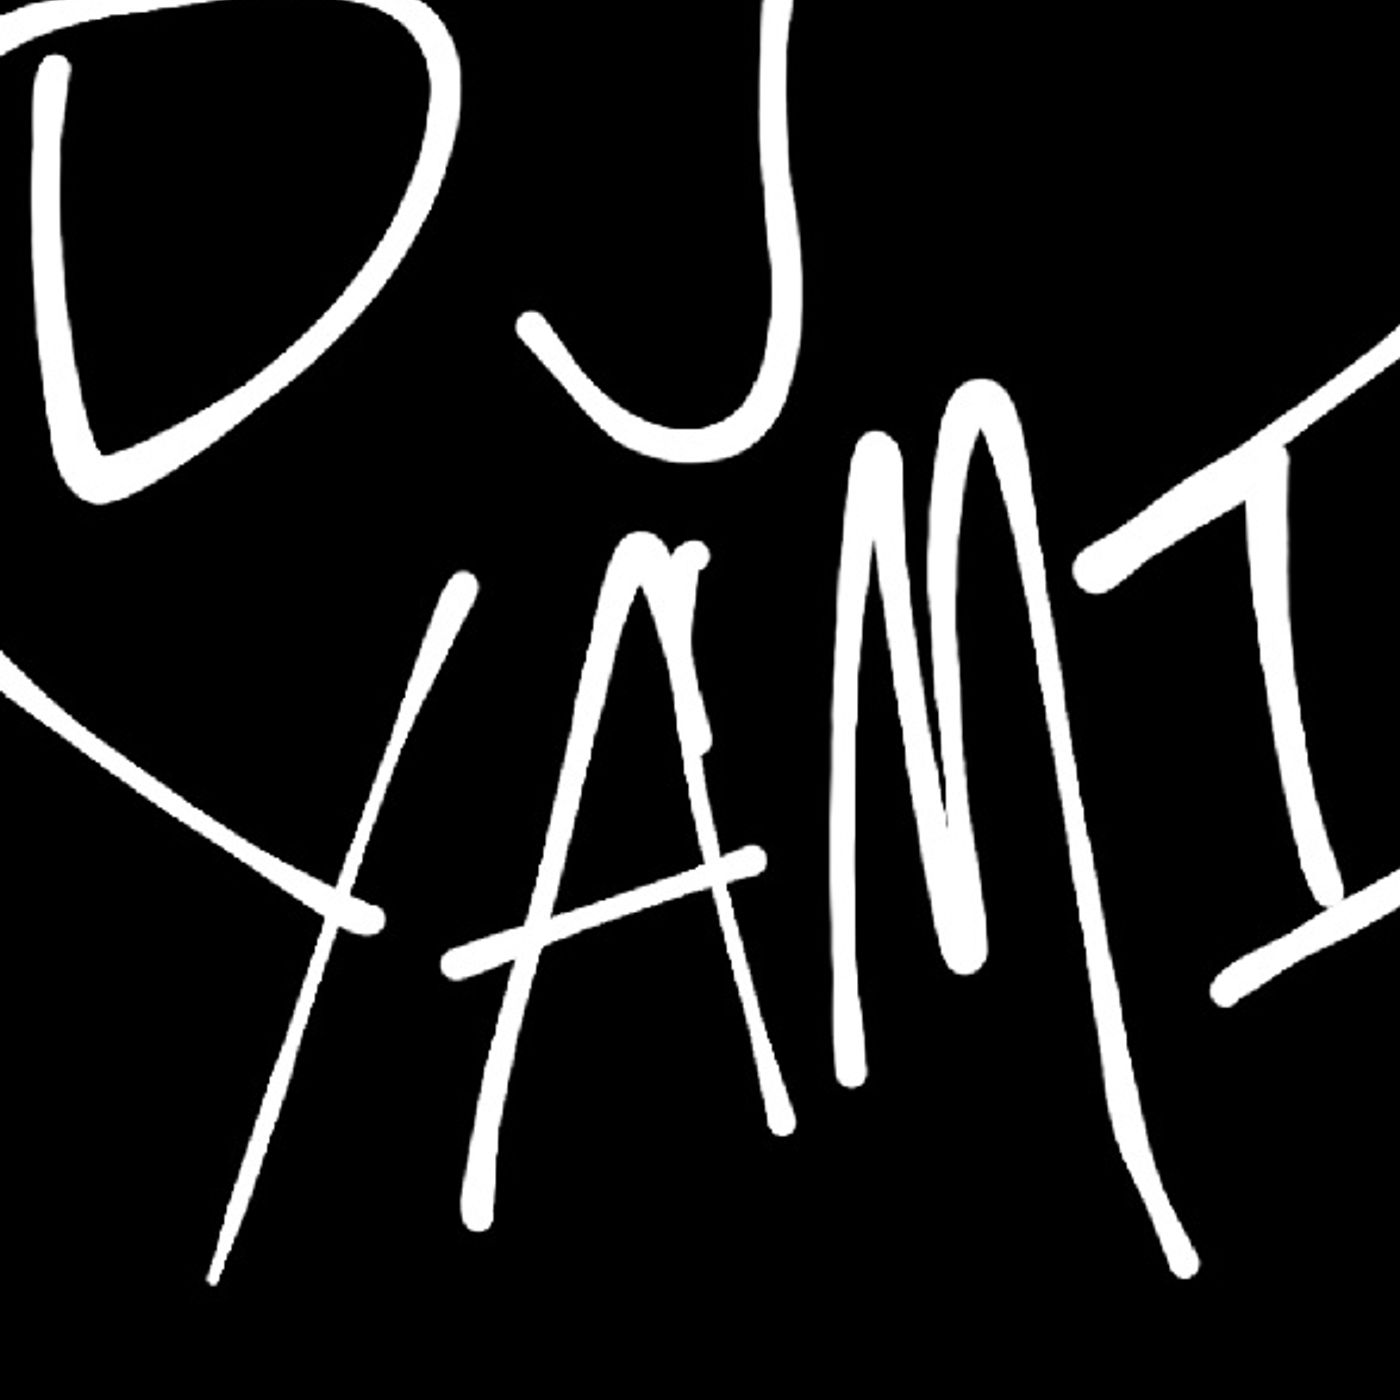 DJ Yami On Spotify!!!